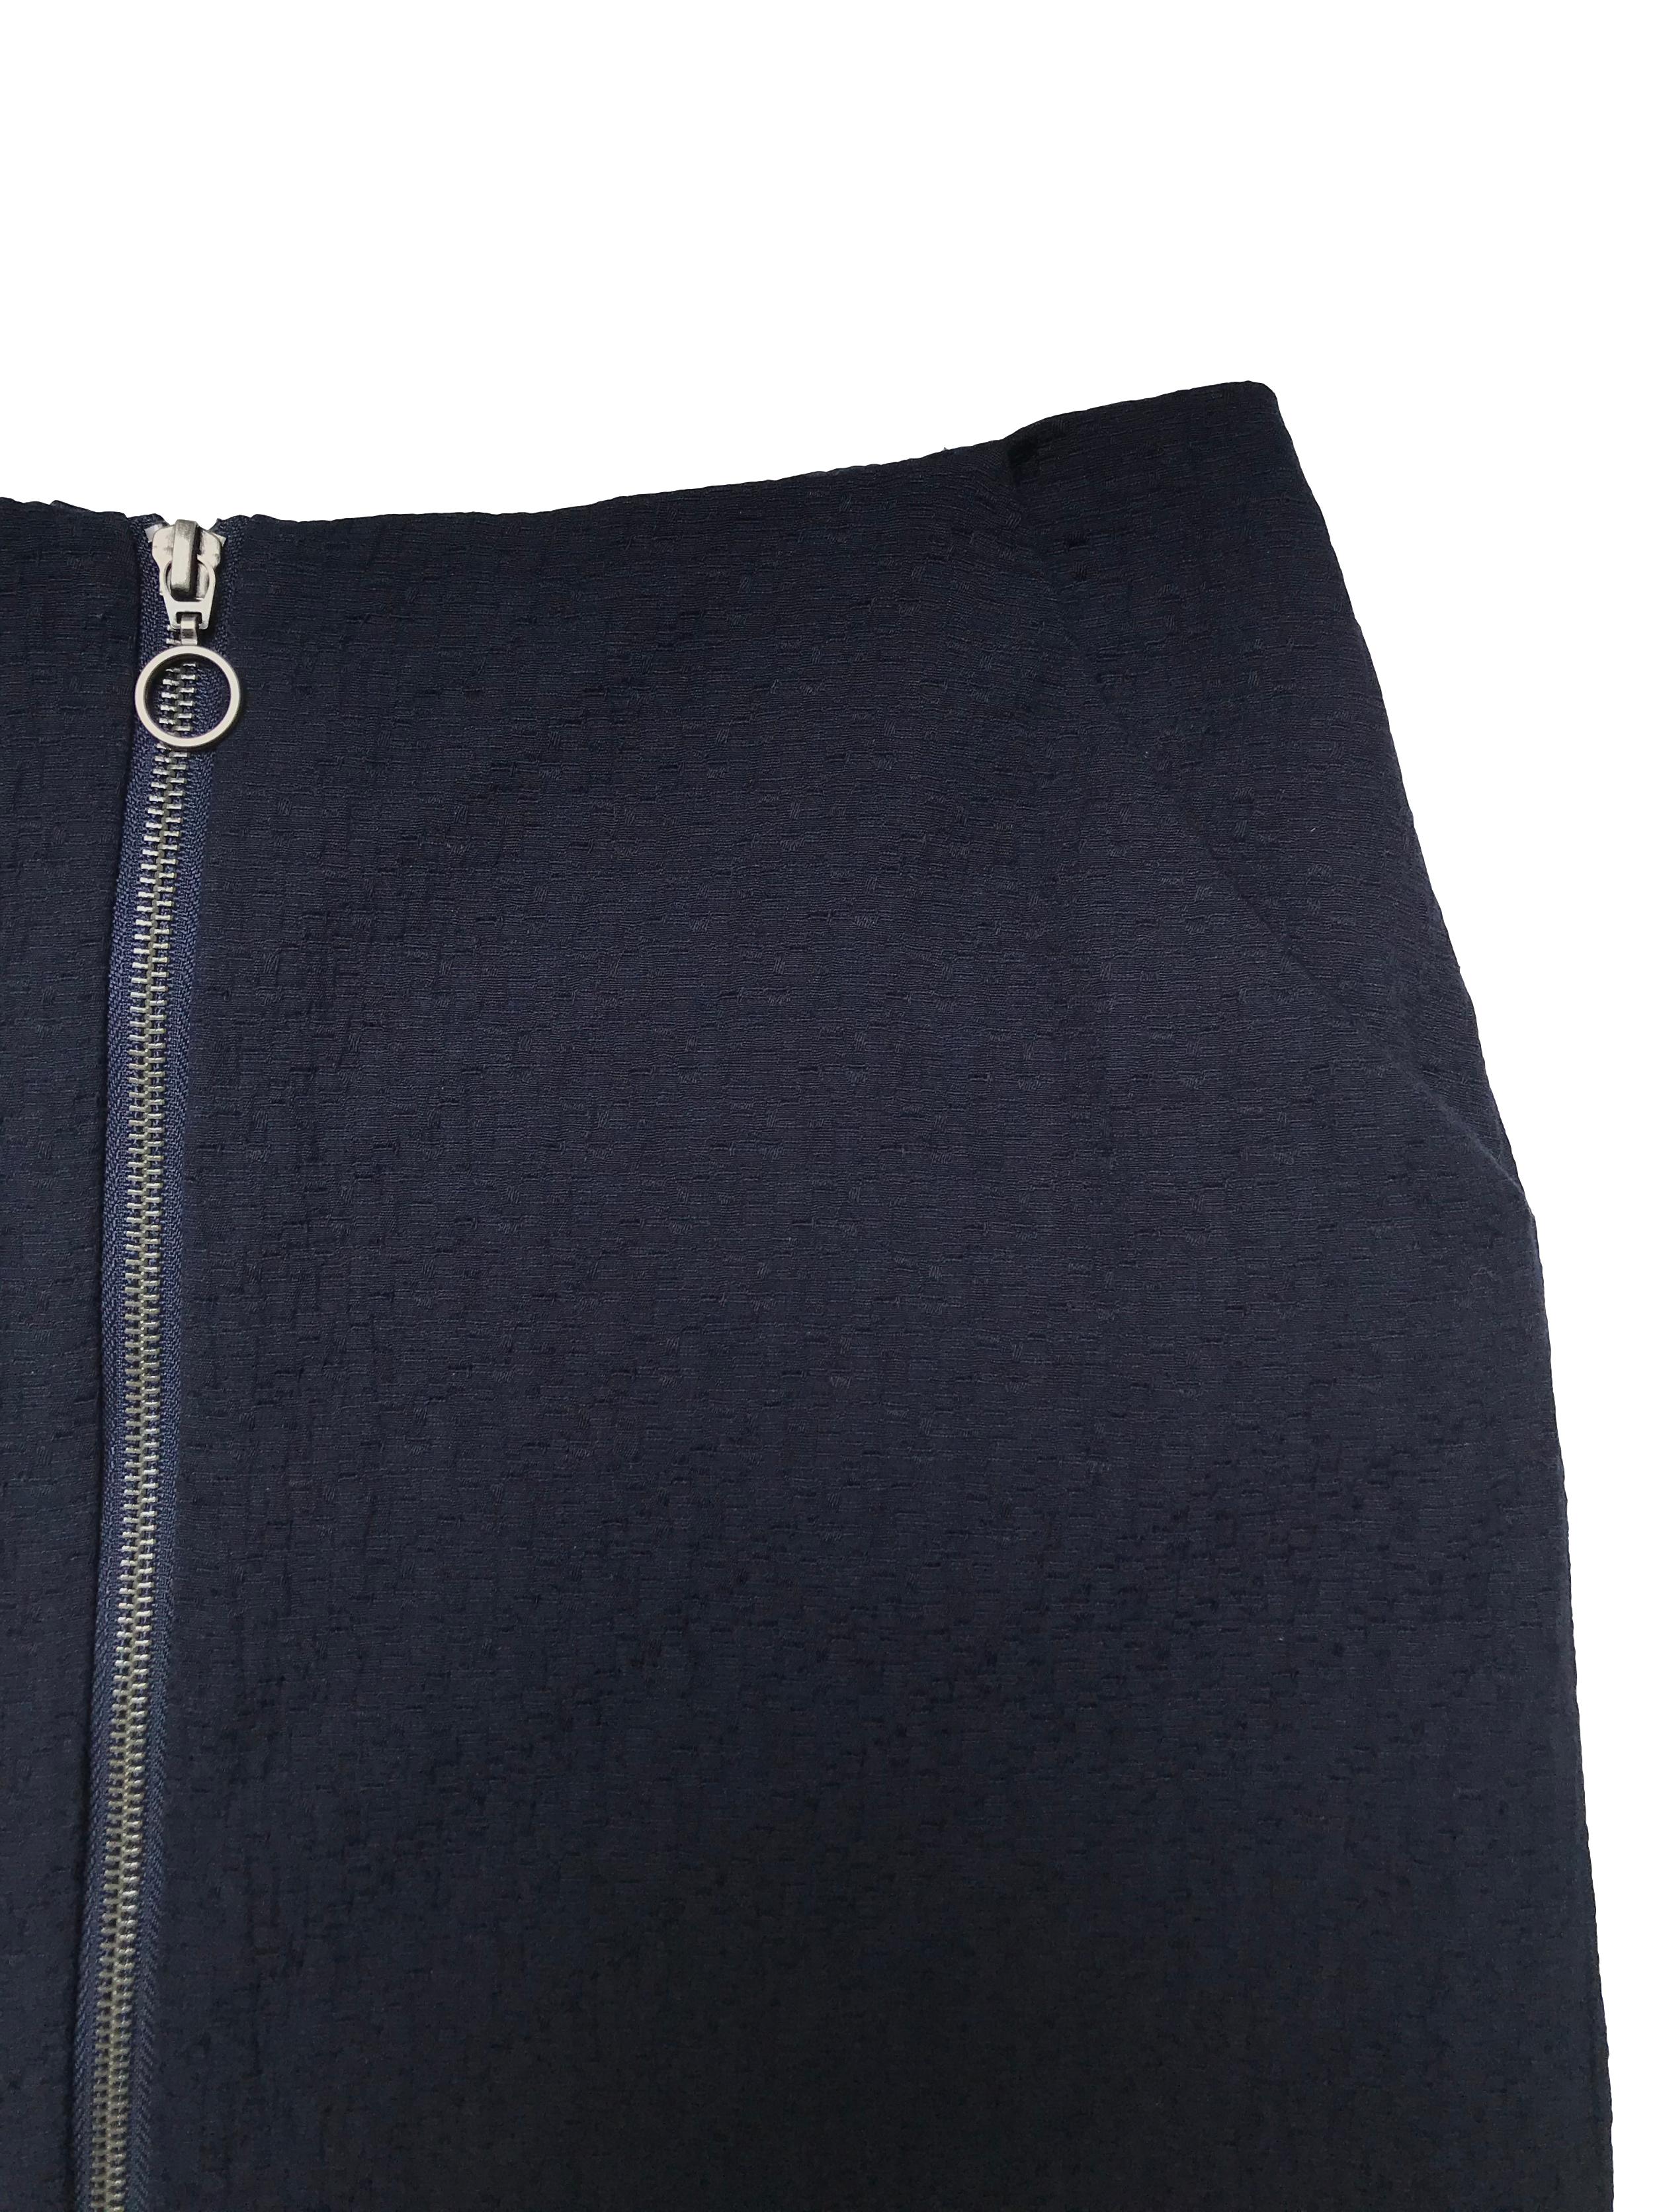 Falda Marquis azul de tela plana con textura, lleva forro, bolsillos laterales y cierre al centro. Cintura 78cm Largo 42cm